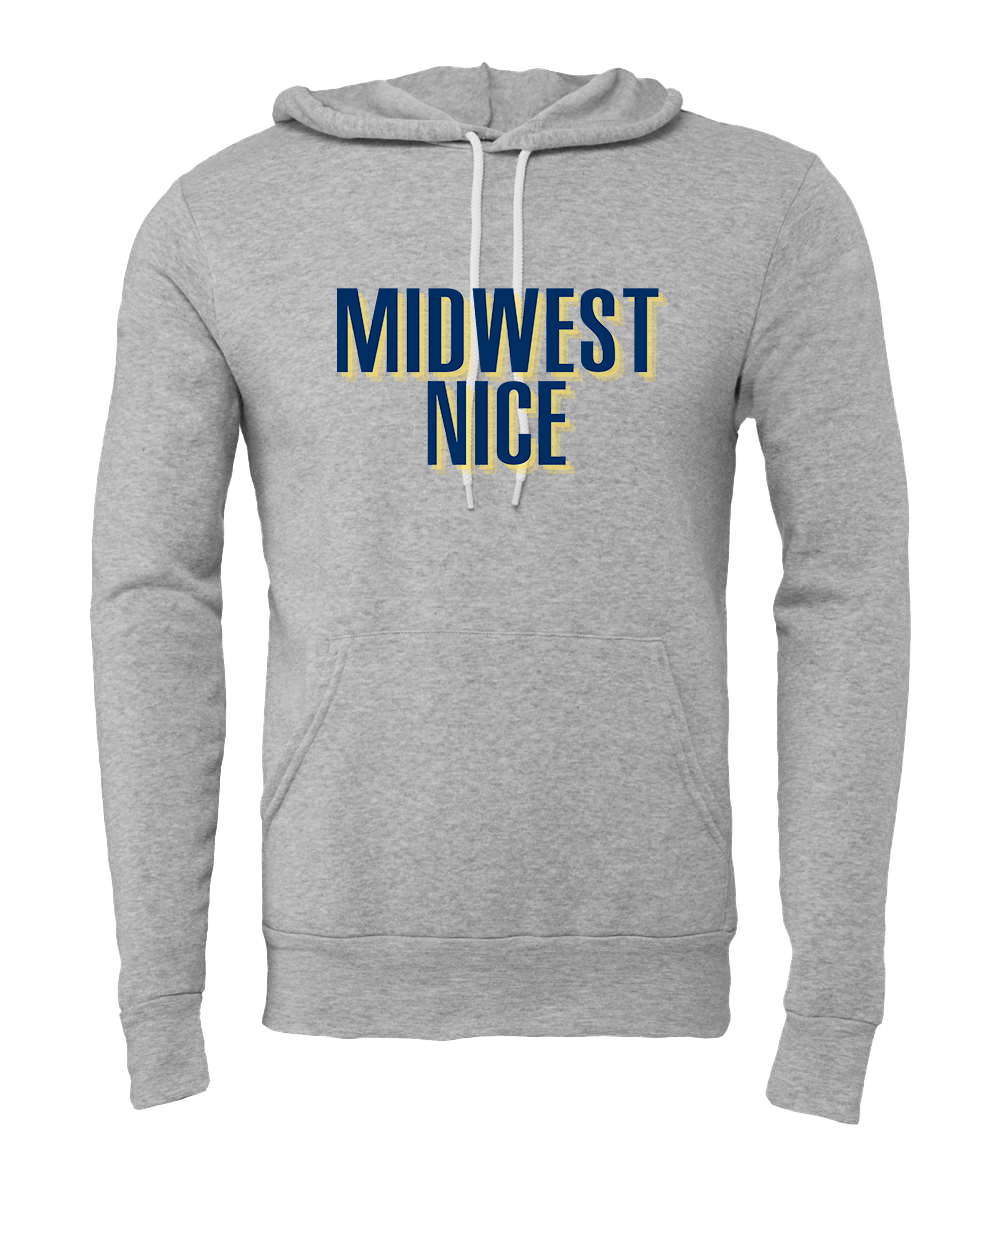 Midwest Nice Hooded Sweatshirt - Athletic Grey